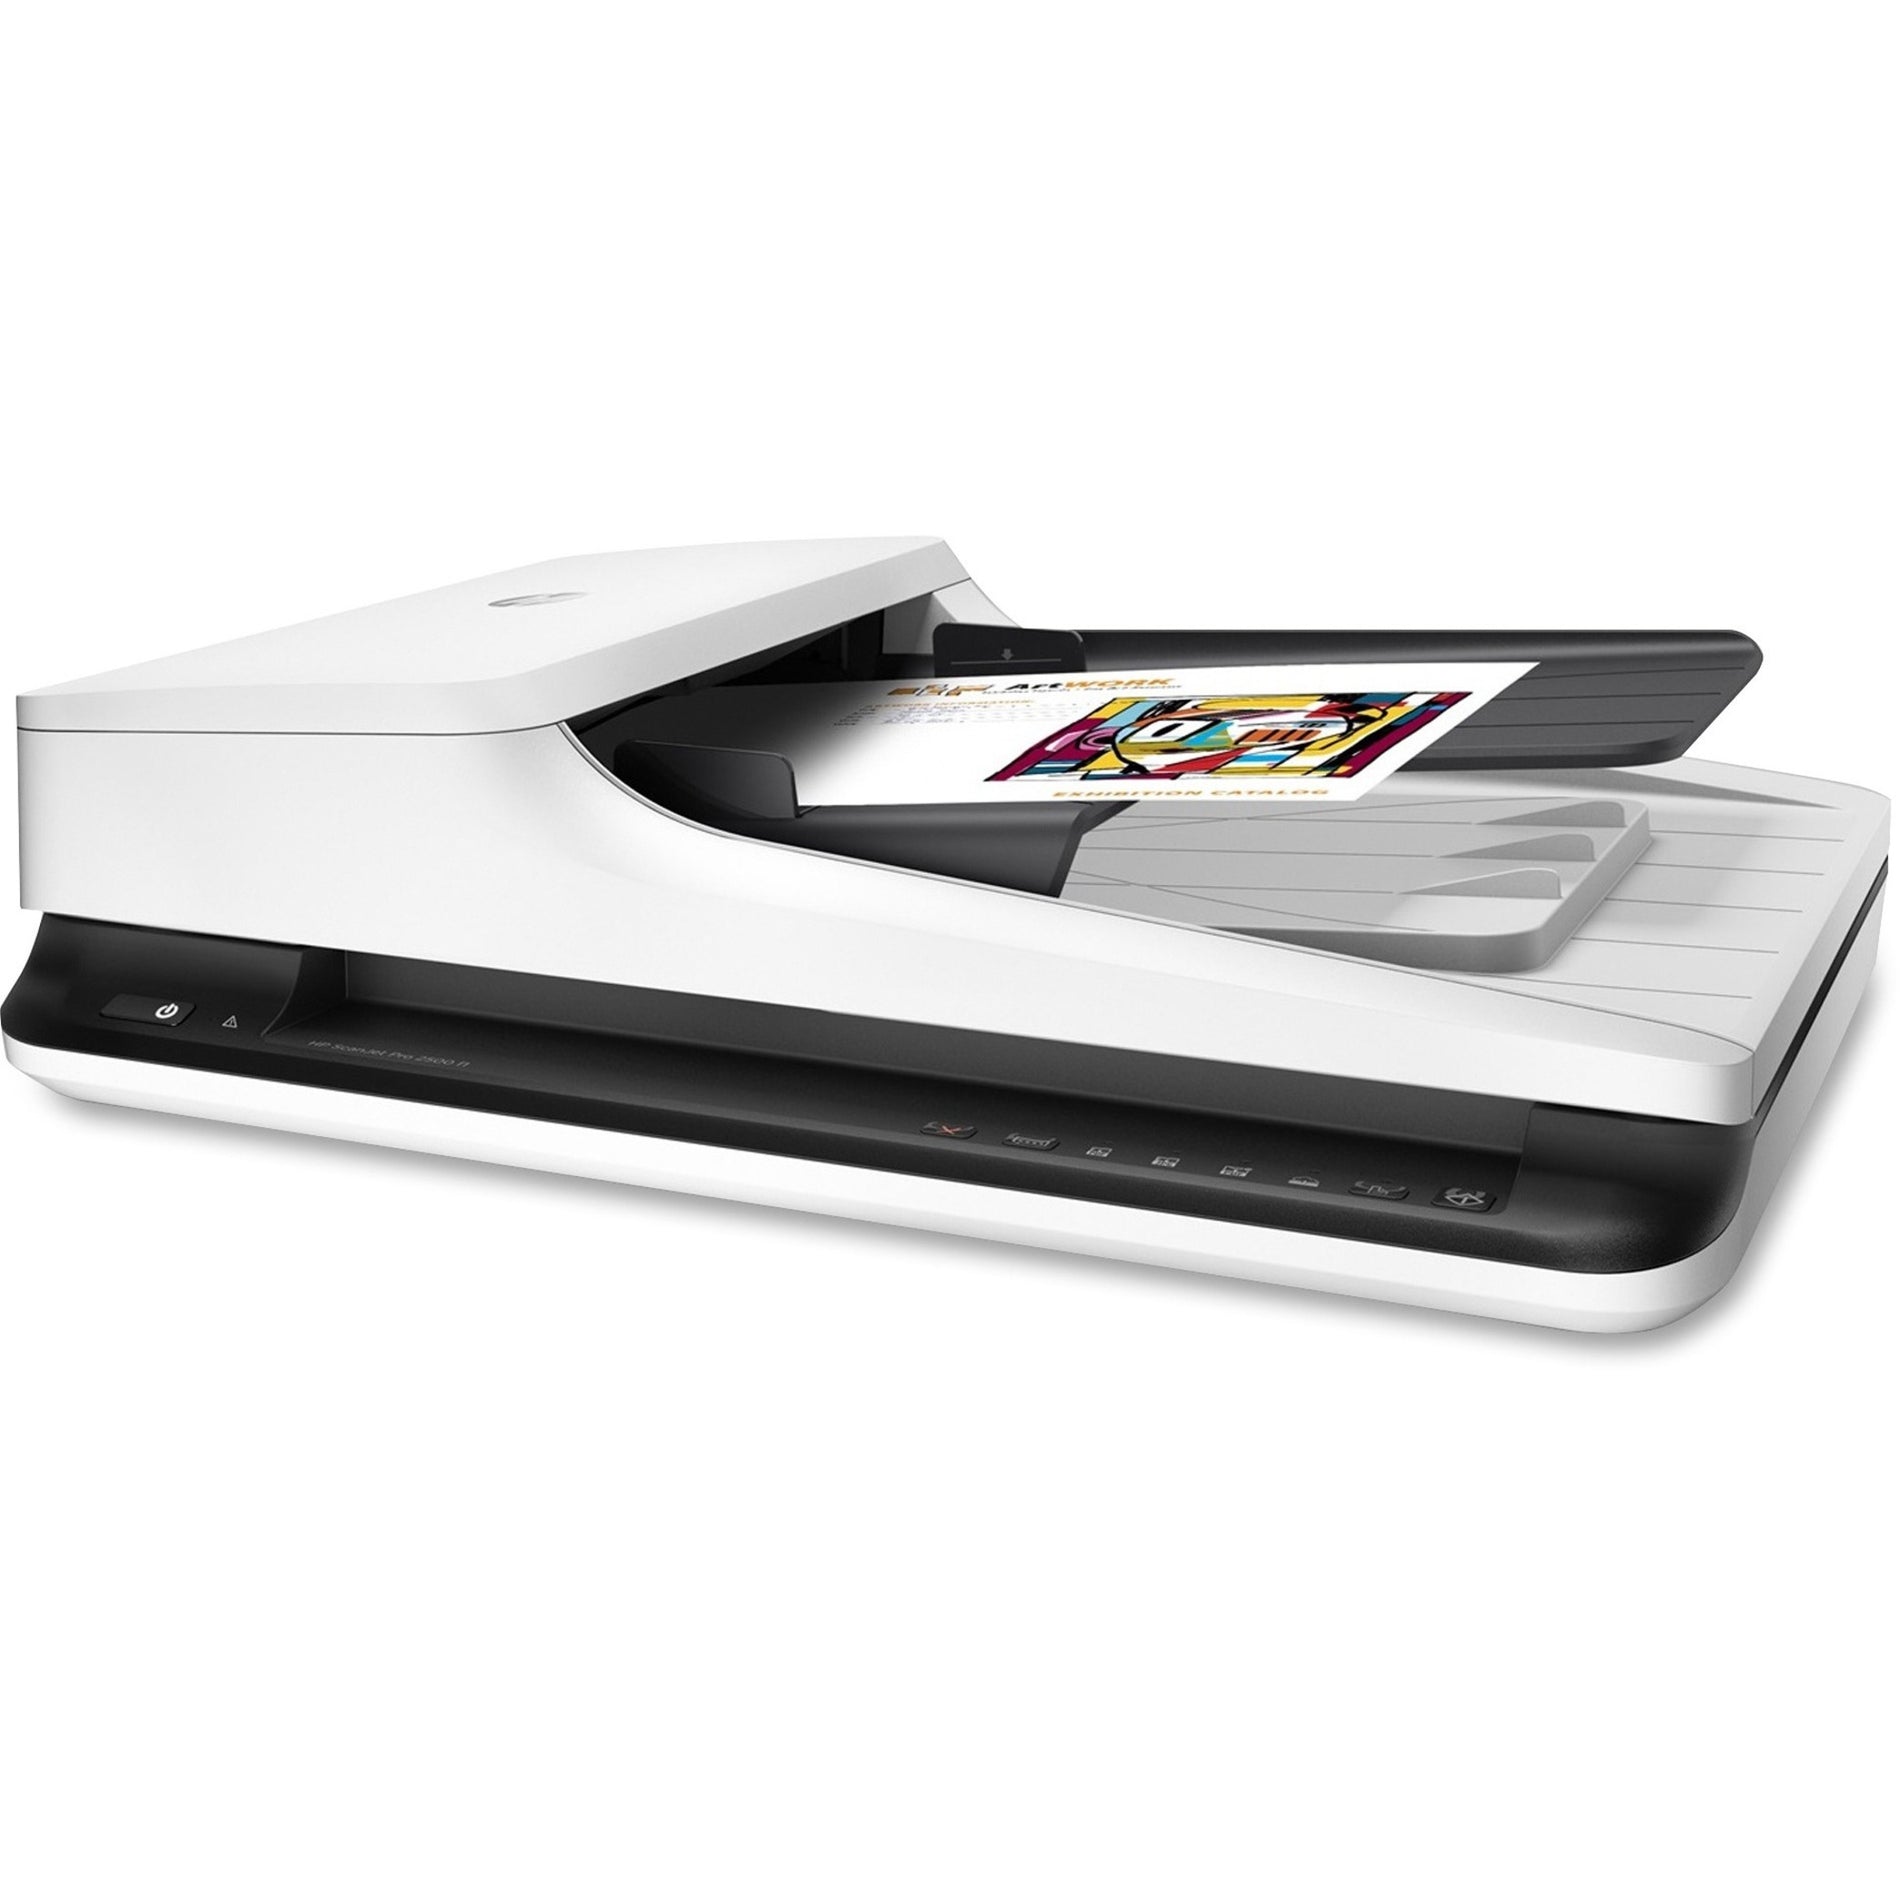 HP L2747A#BGJ ScanJet Pro 2500 f1 Flatbed Scanner - High Resolution Color Scanning, Duplex Scanning, USB Connectivity